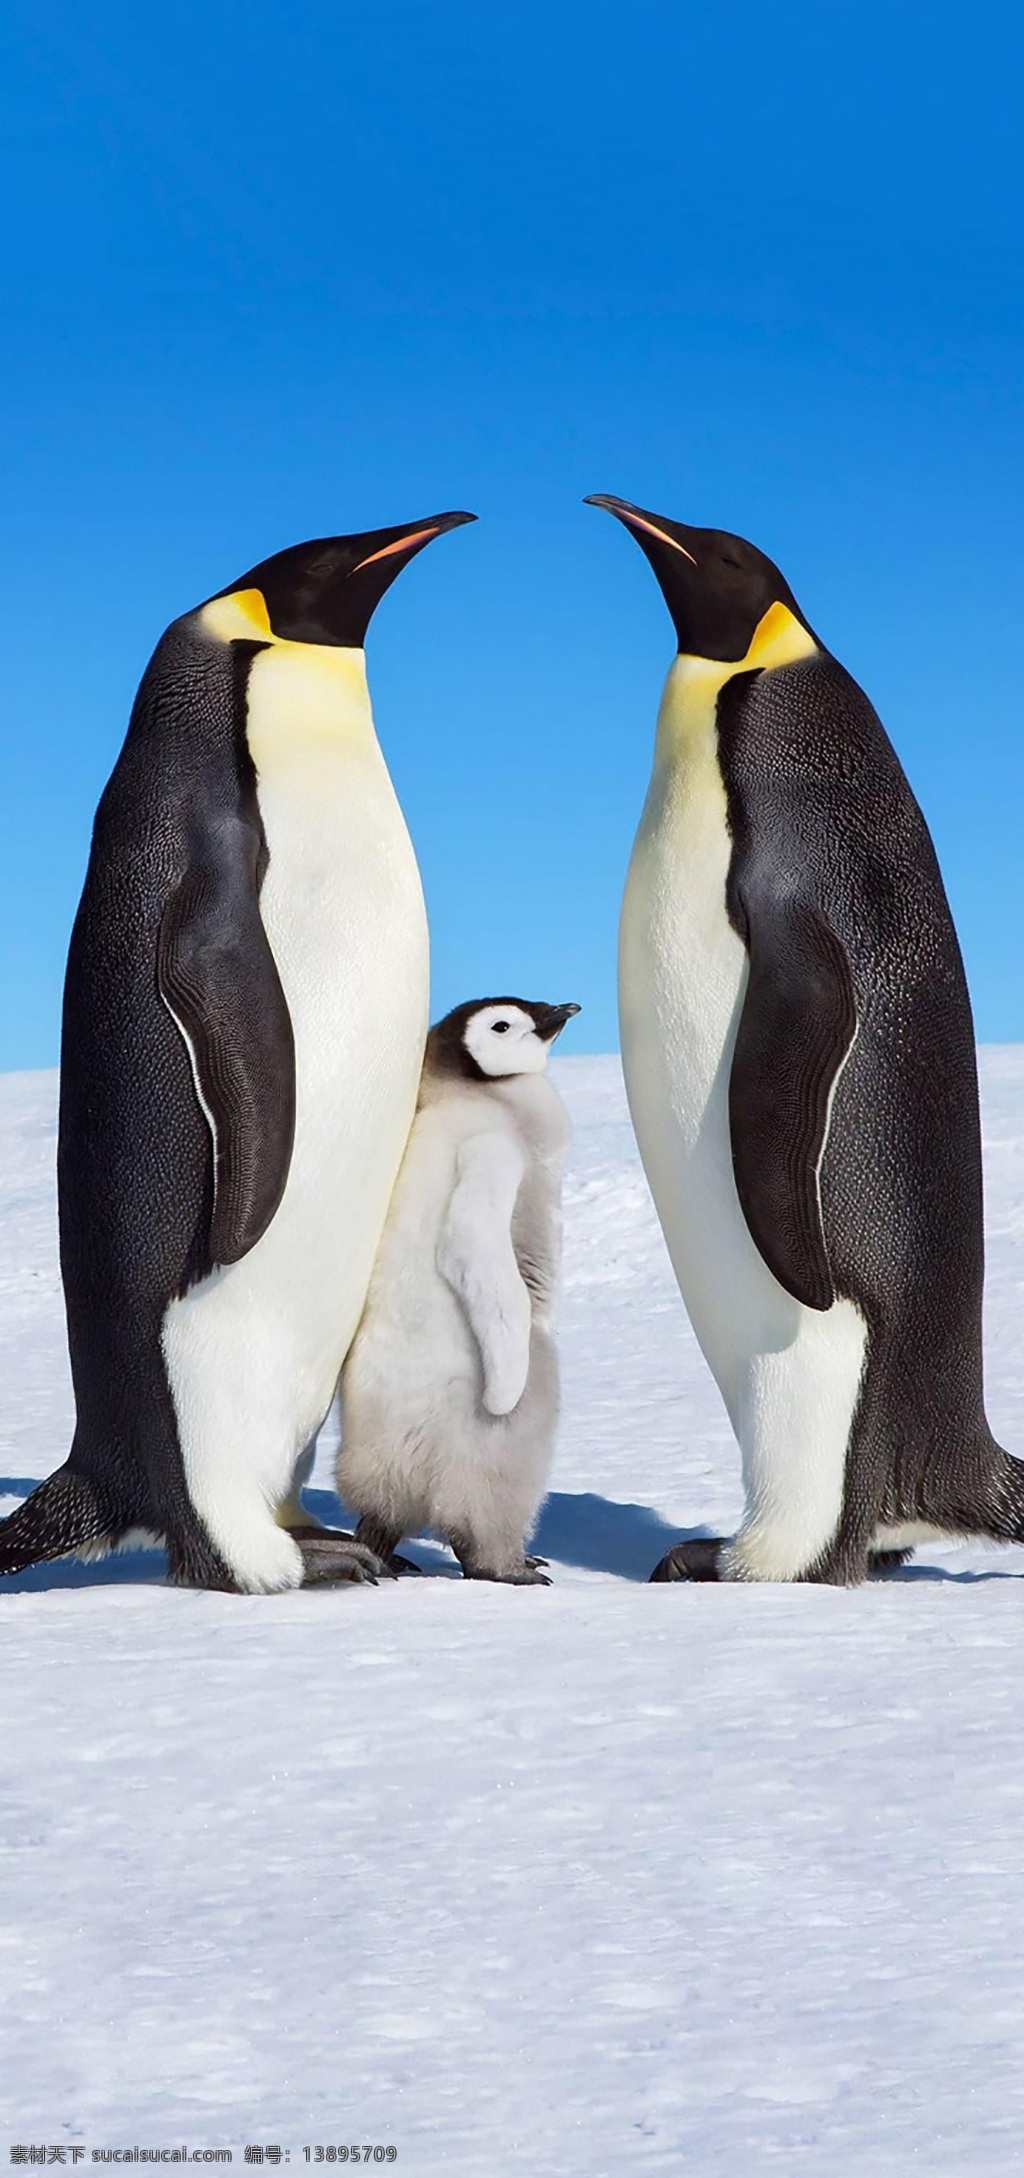 企鹅 南极 冰川 动物 寒冷 全球变暖 气候 生物世界 野生动物